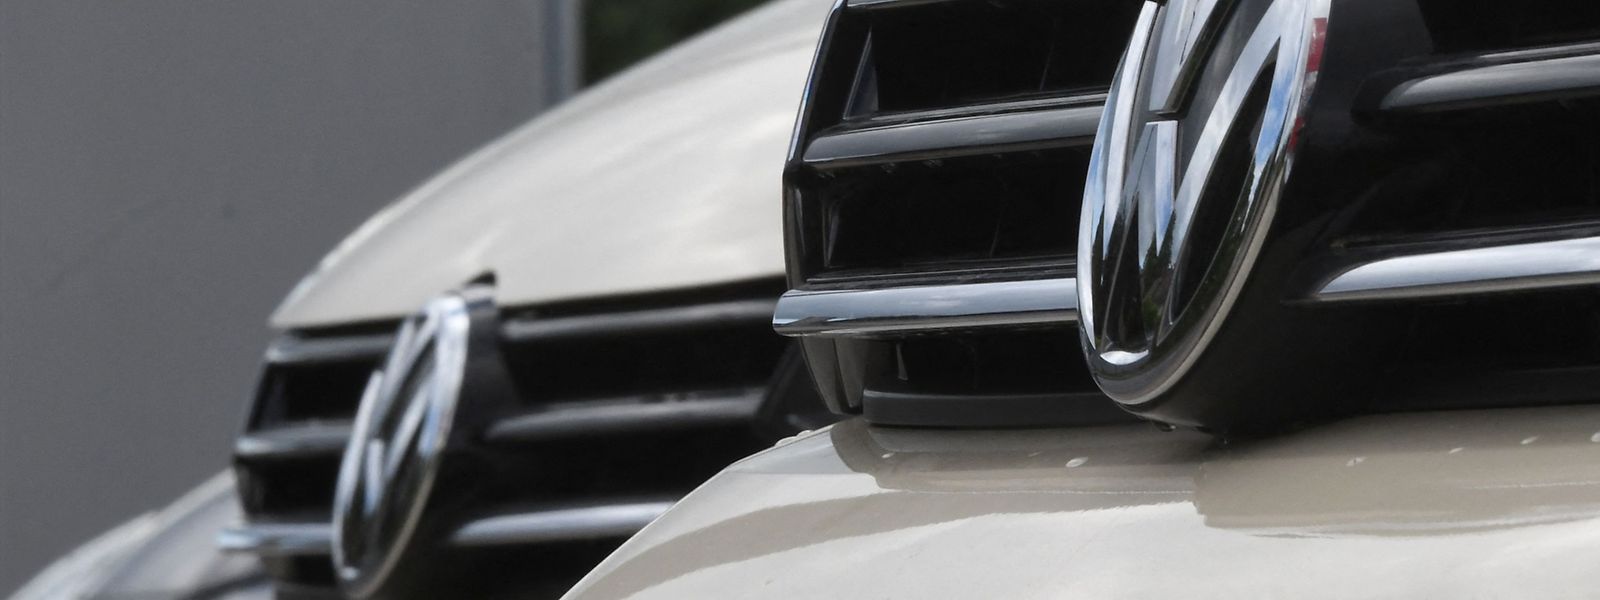 Volkswagen hat sich aus dem Russland-Geschäft weitgehend zurückgezogen.